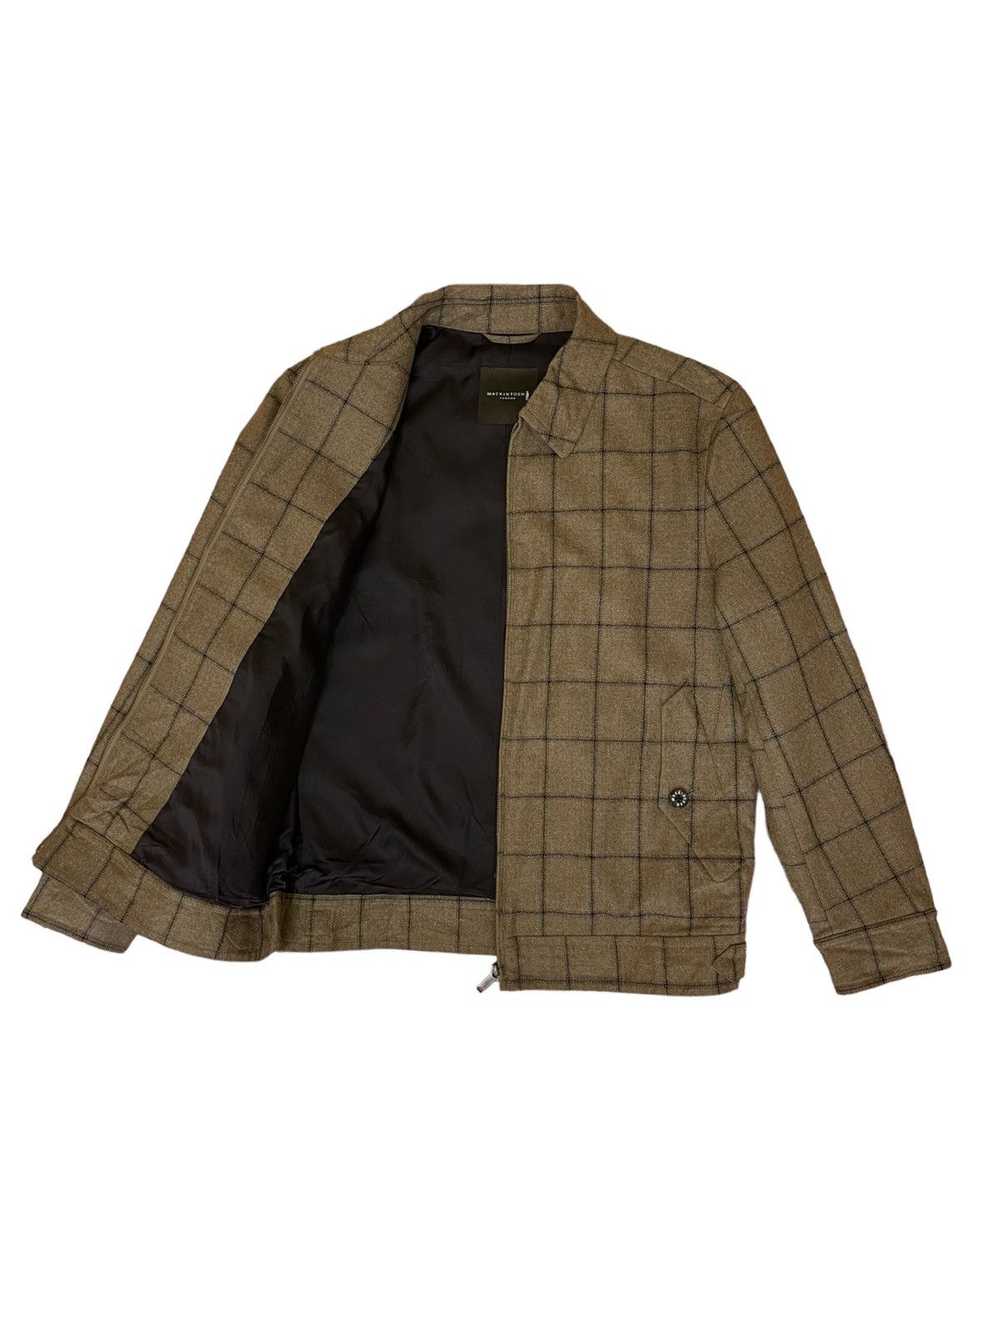 Mackintosh Mackintosh London jacket - image 3